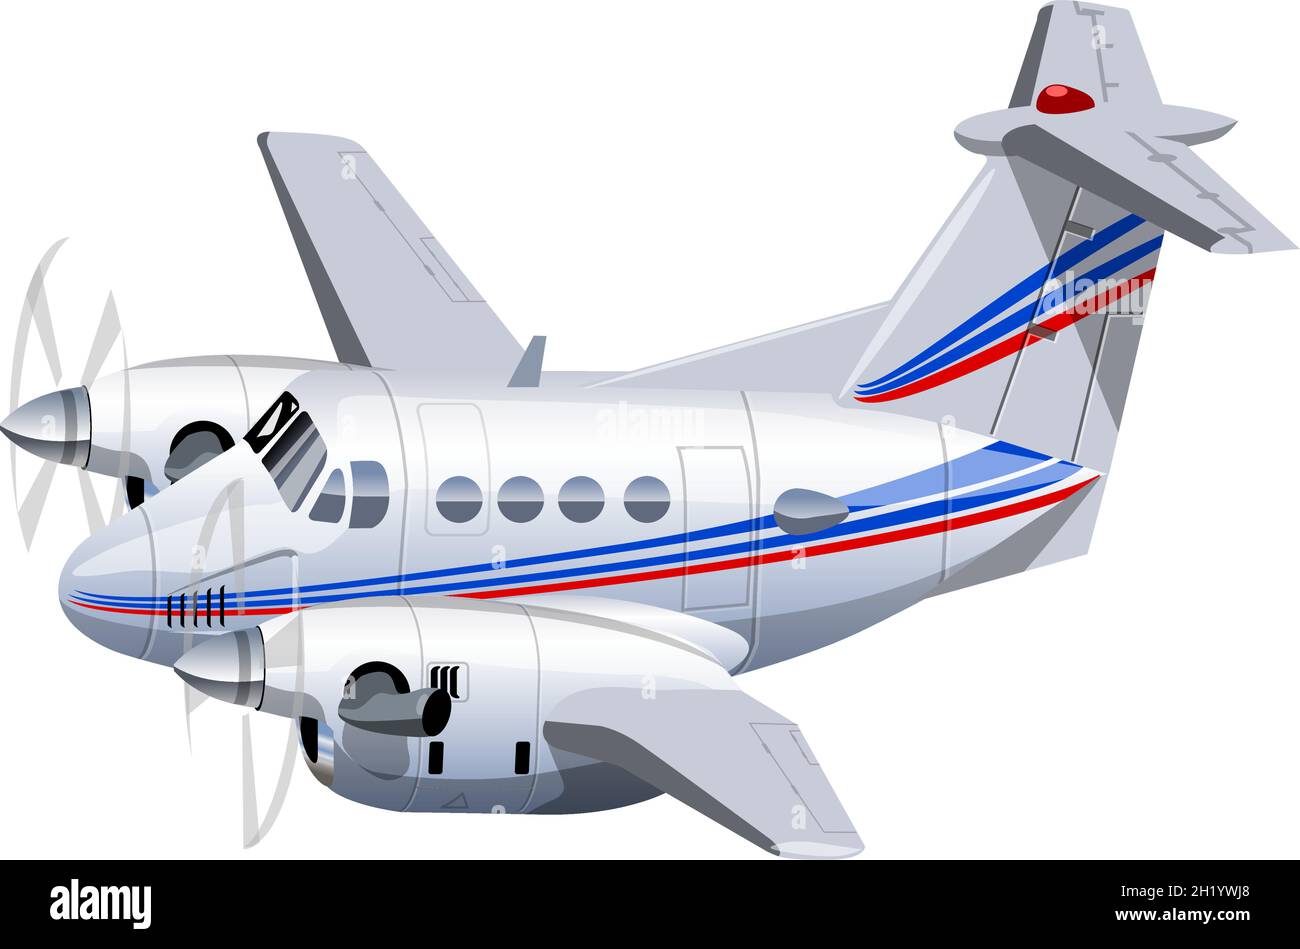 Avion utilitaire Vector Cartoon.Format vectoriel EPS-10 disponible, séparé par des groupes pour une édition facile Illustration de Vecteur